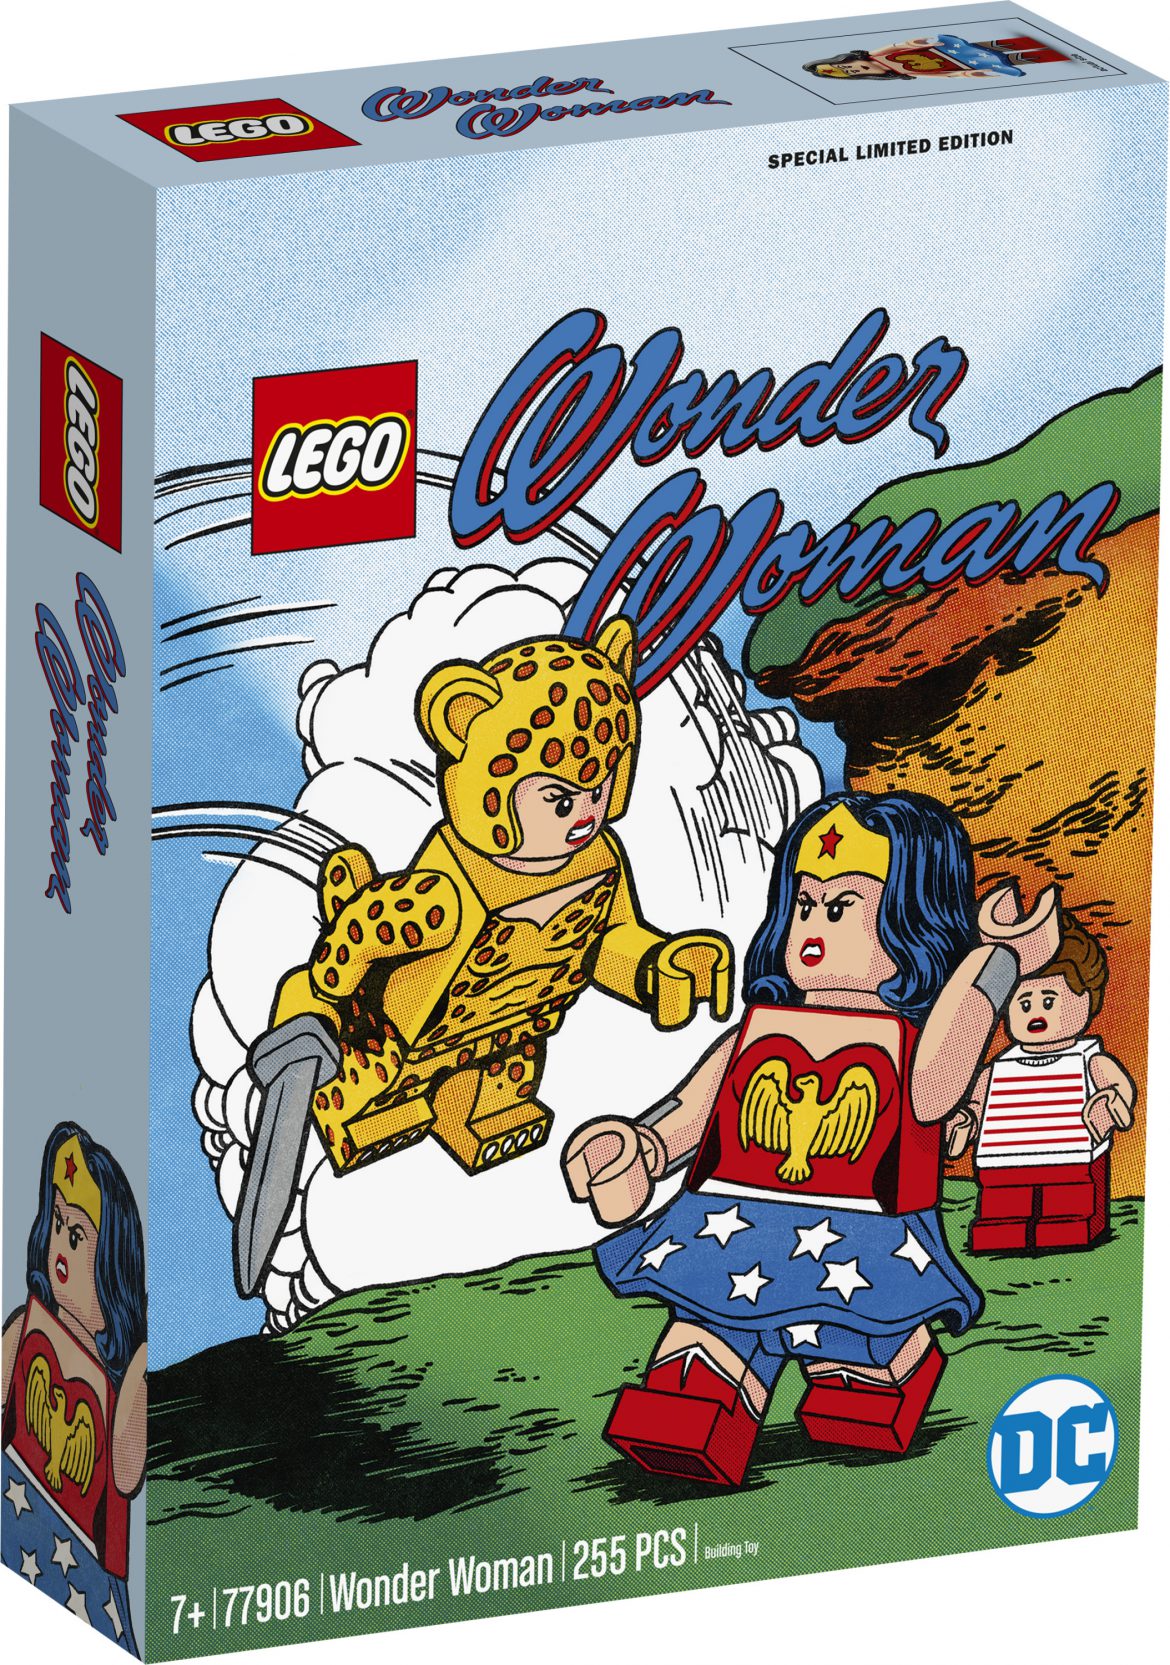 Lego 77906 DC Comics Wonder Woman Pre-Order at Lego.com and Walmart.com